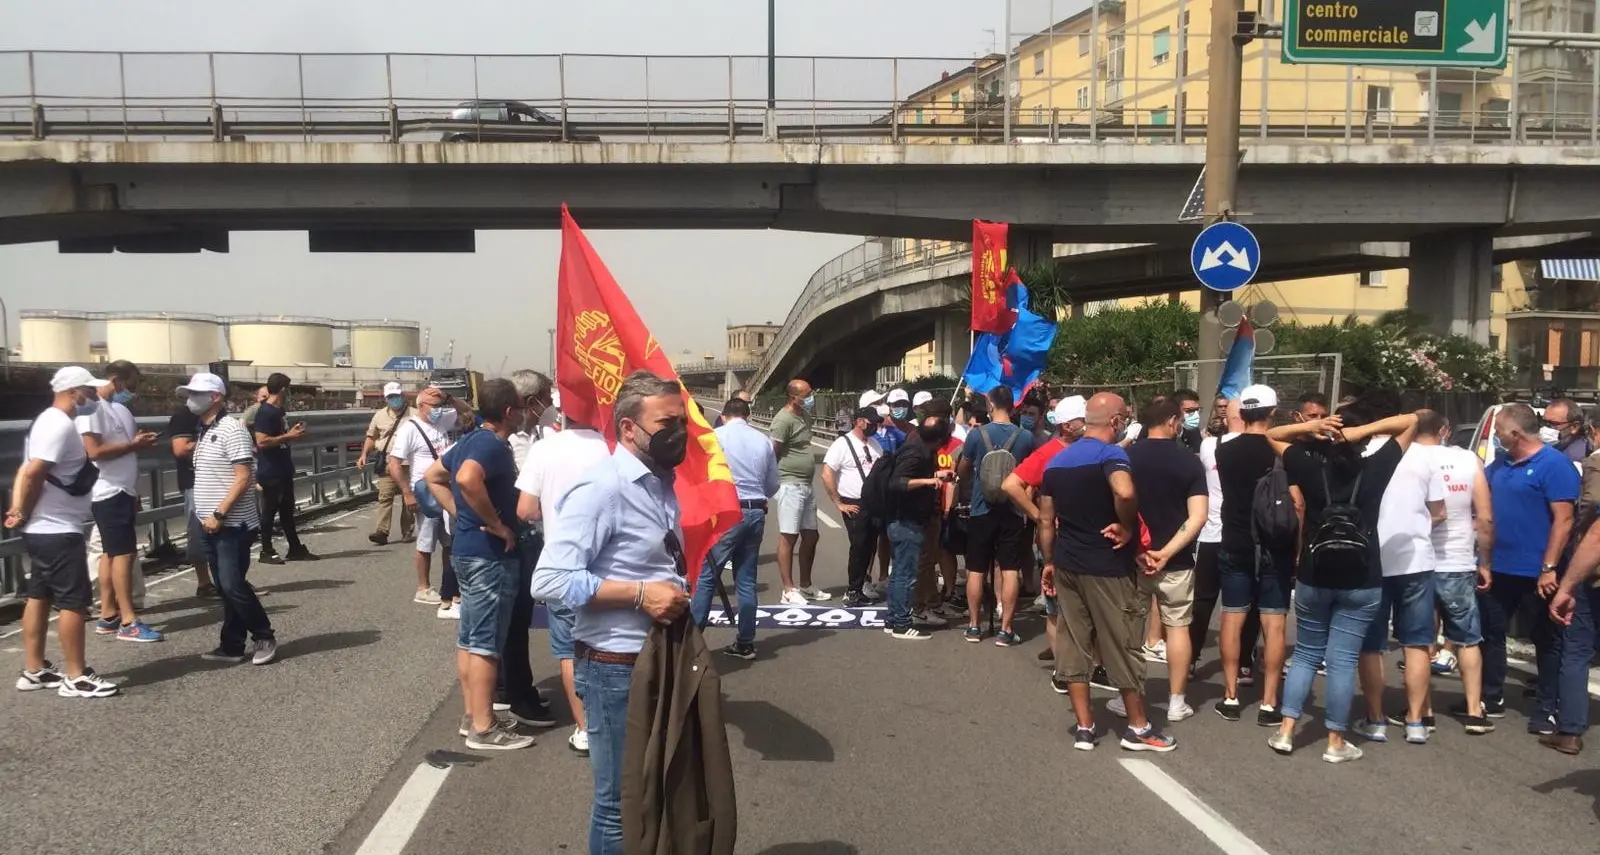 Whirlpool, lavoratori occupano svincolo autostradale a Napoli